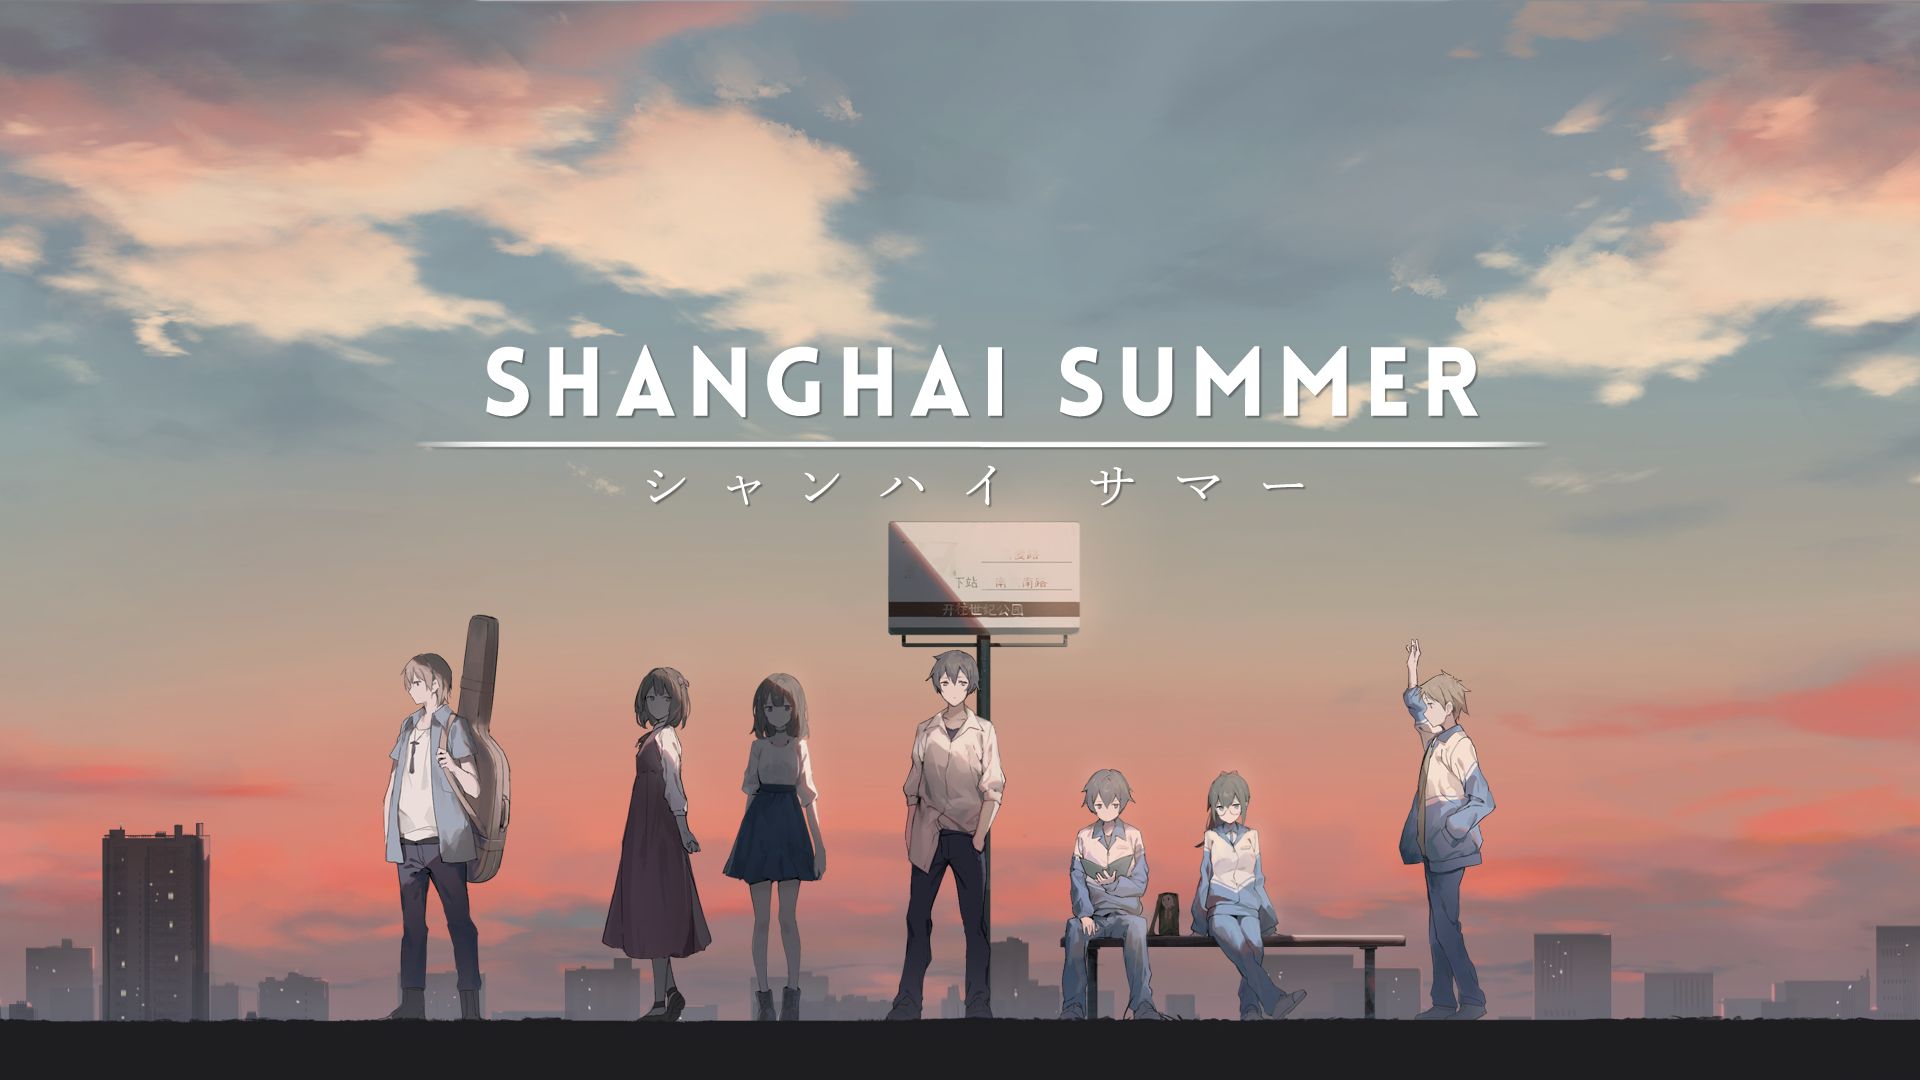 #Shanghai Summer schickt euch auf ein Sommermärchen voller Reue und Wiedergutmachung